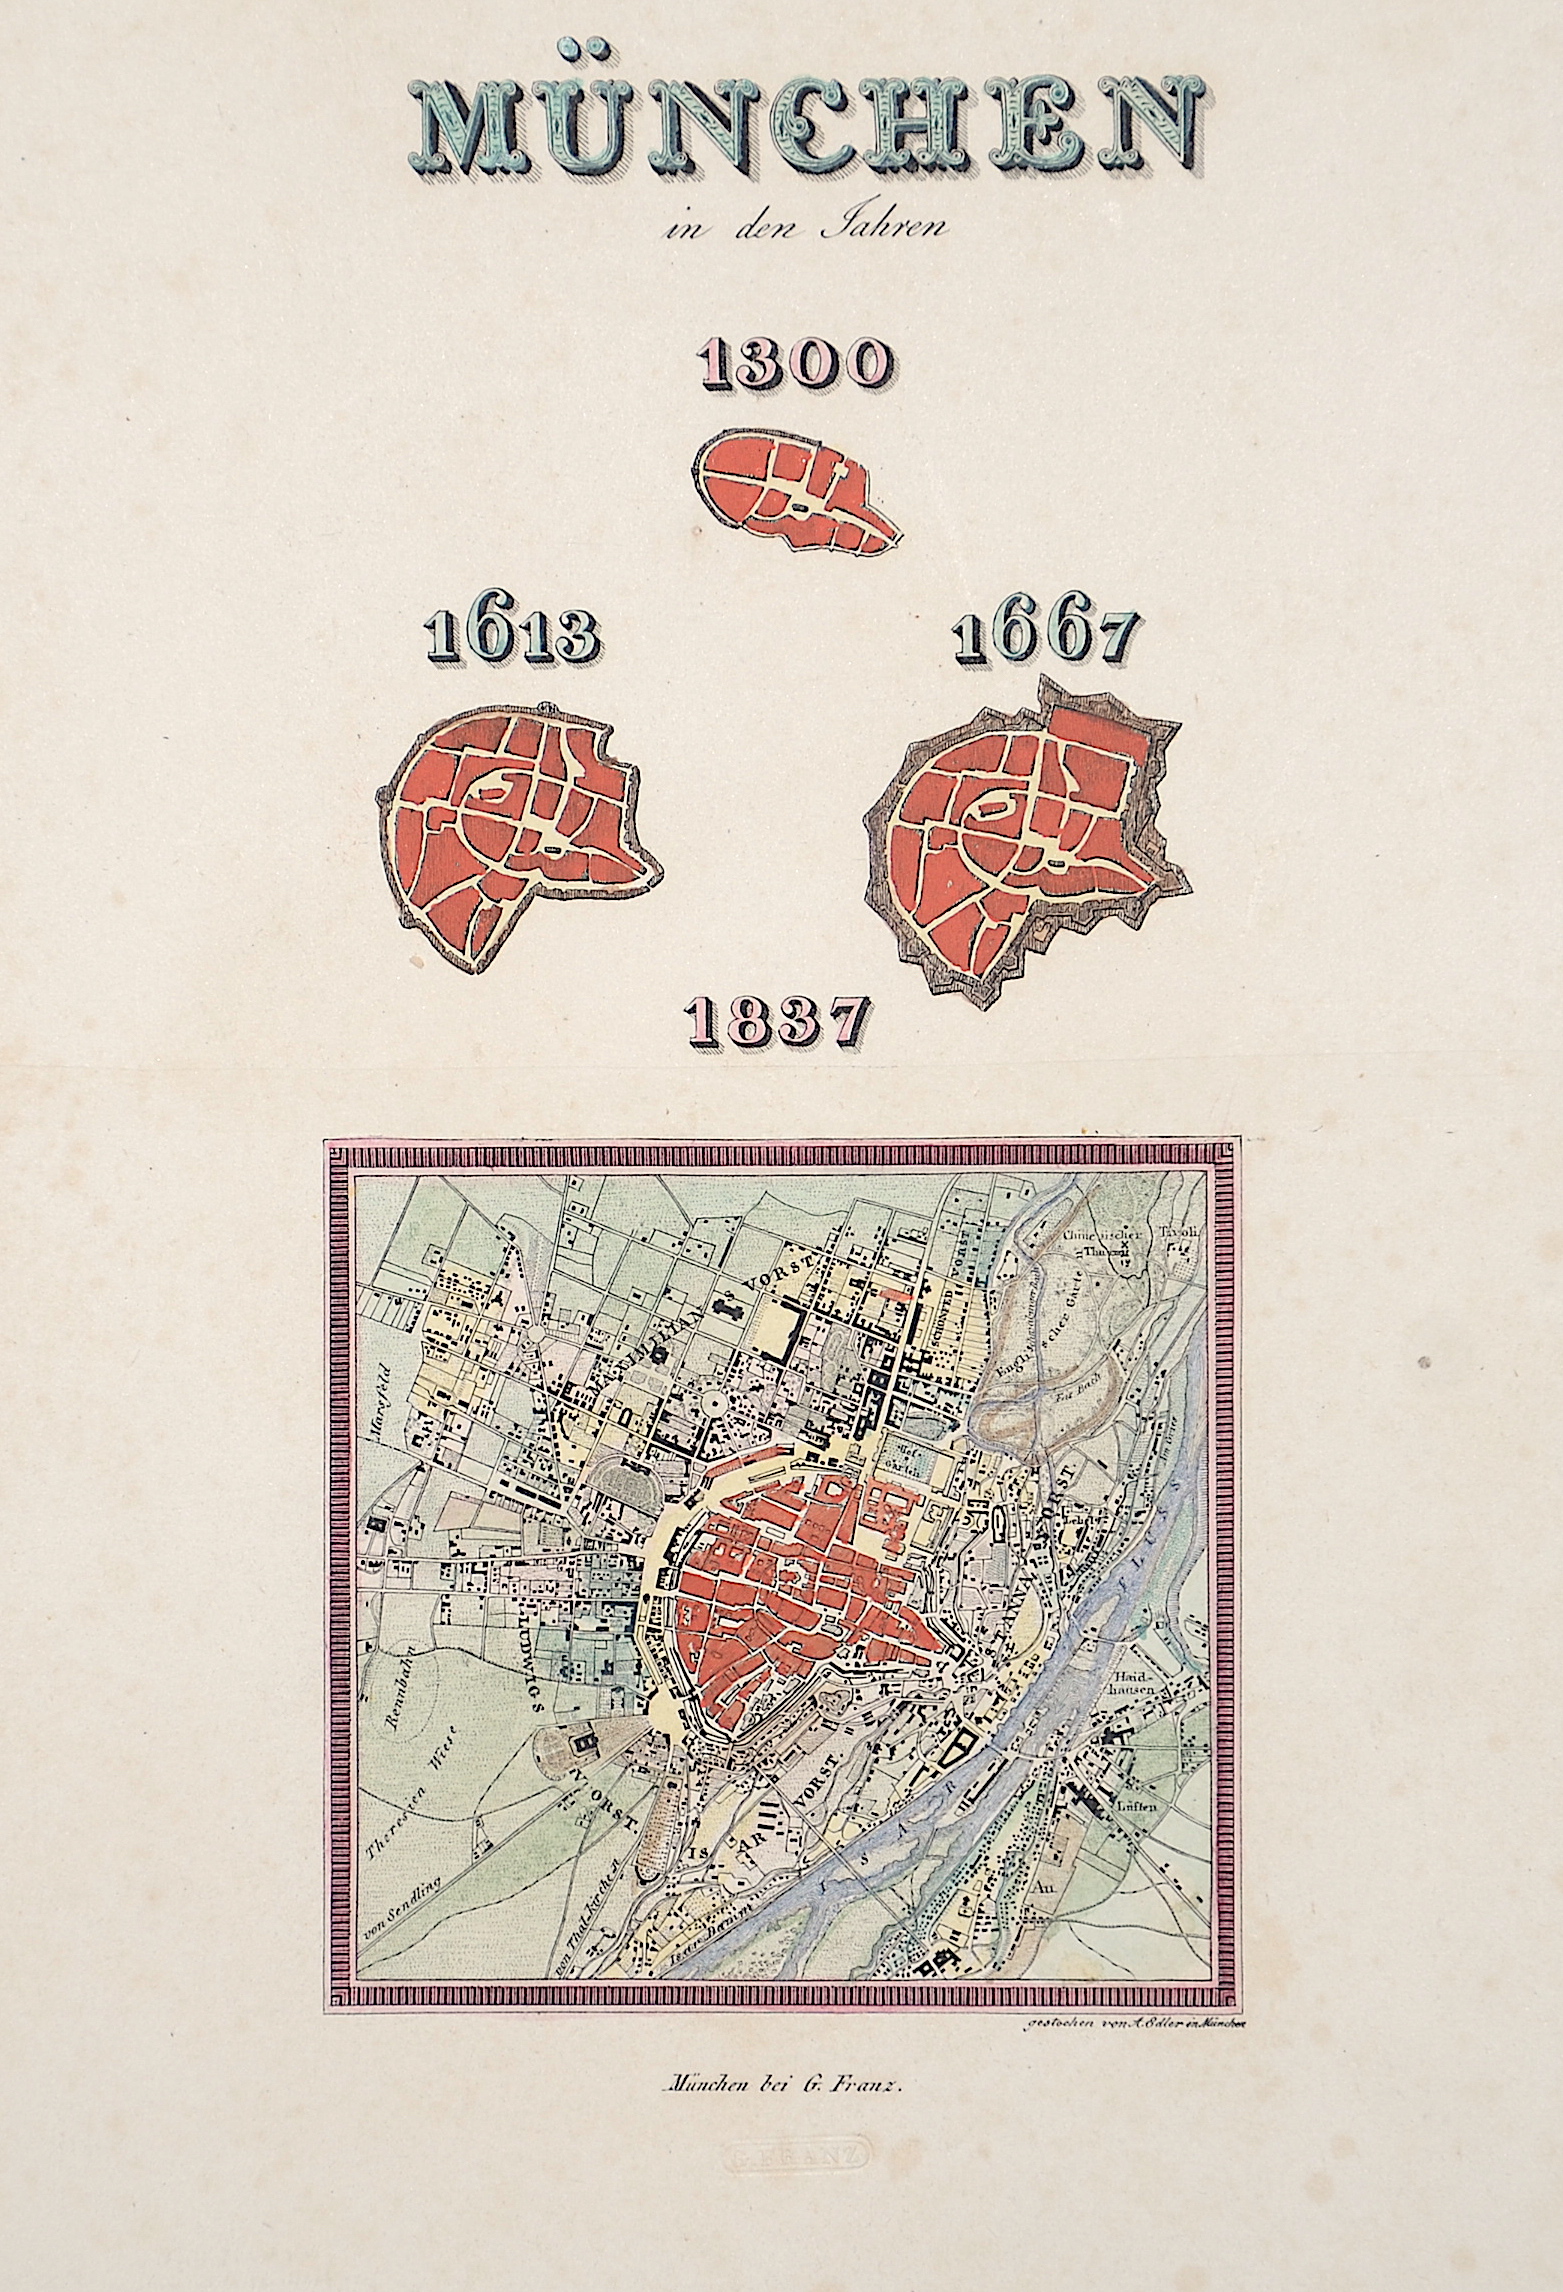 Edler.  München in den Jahren 1300, 1613, 1667 und 1837